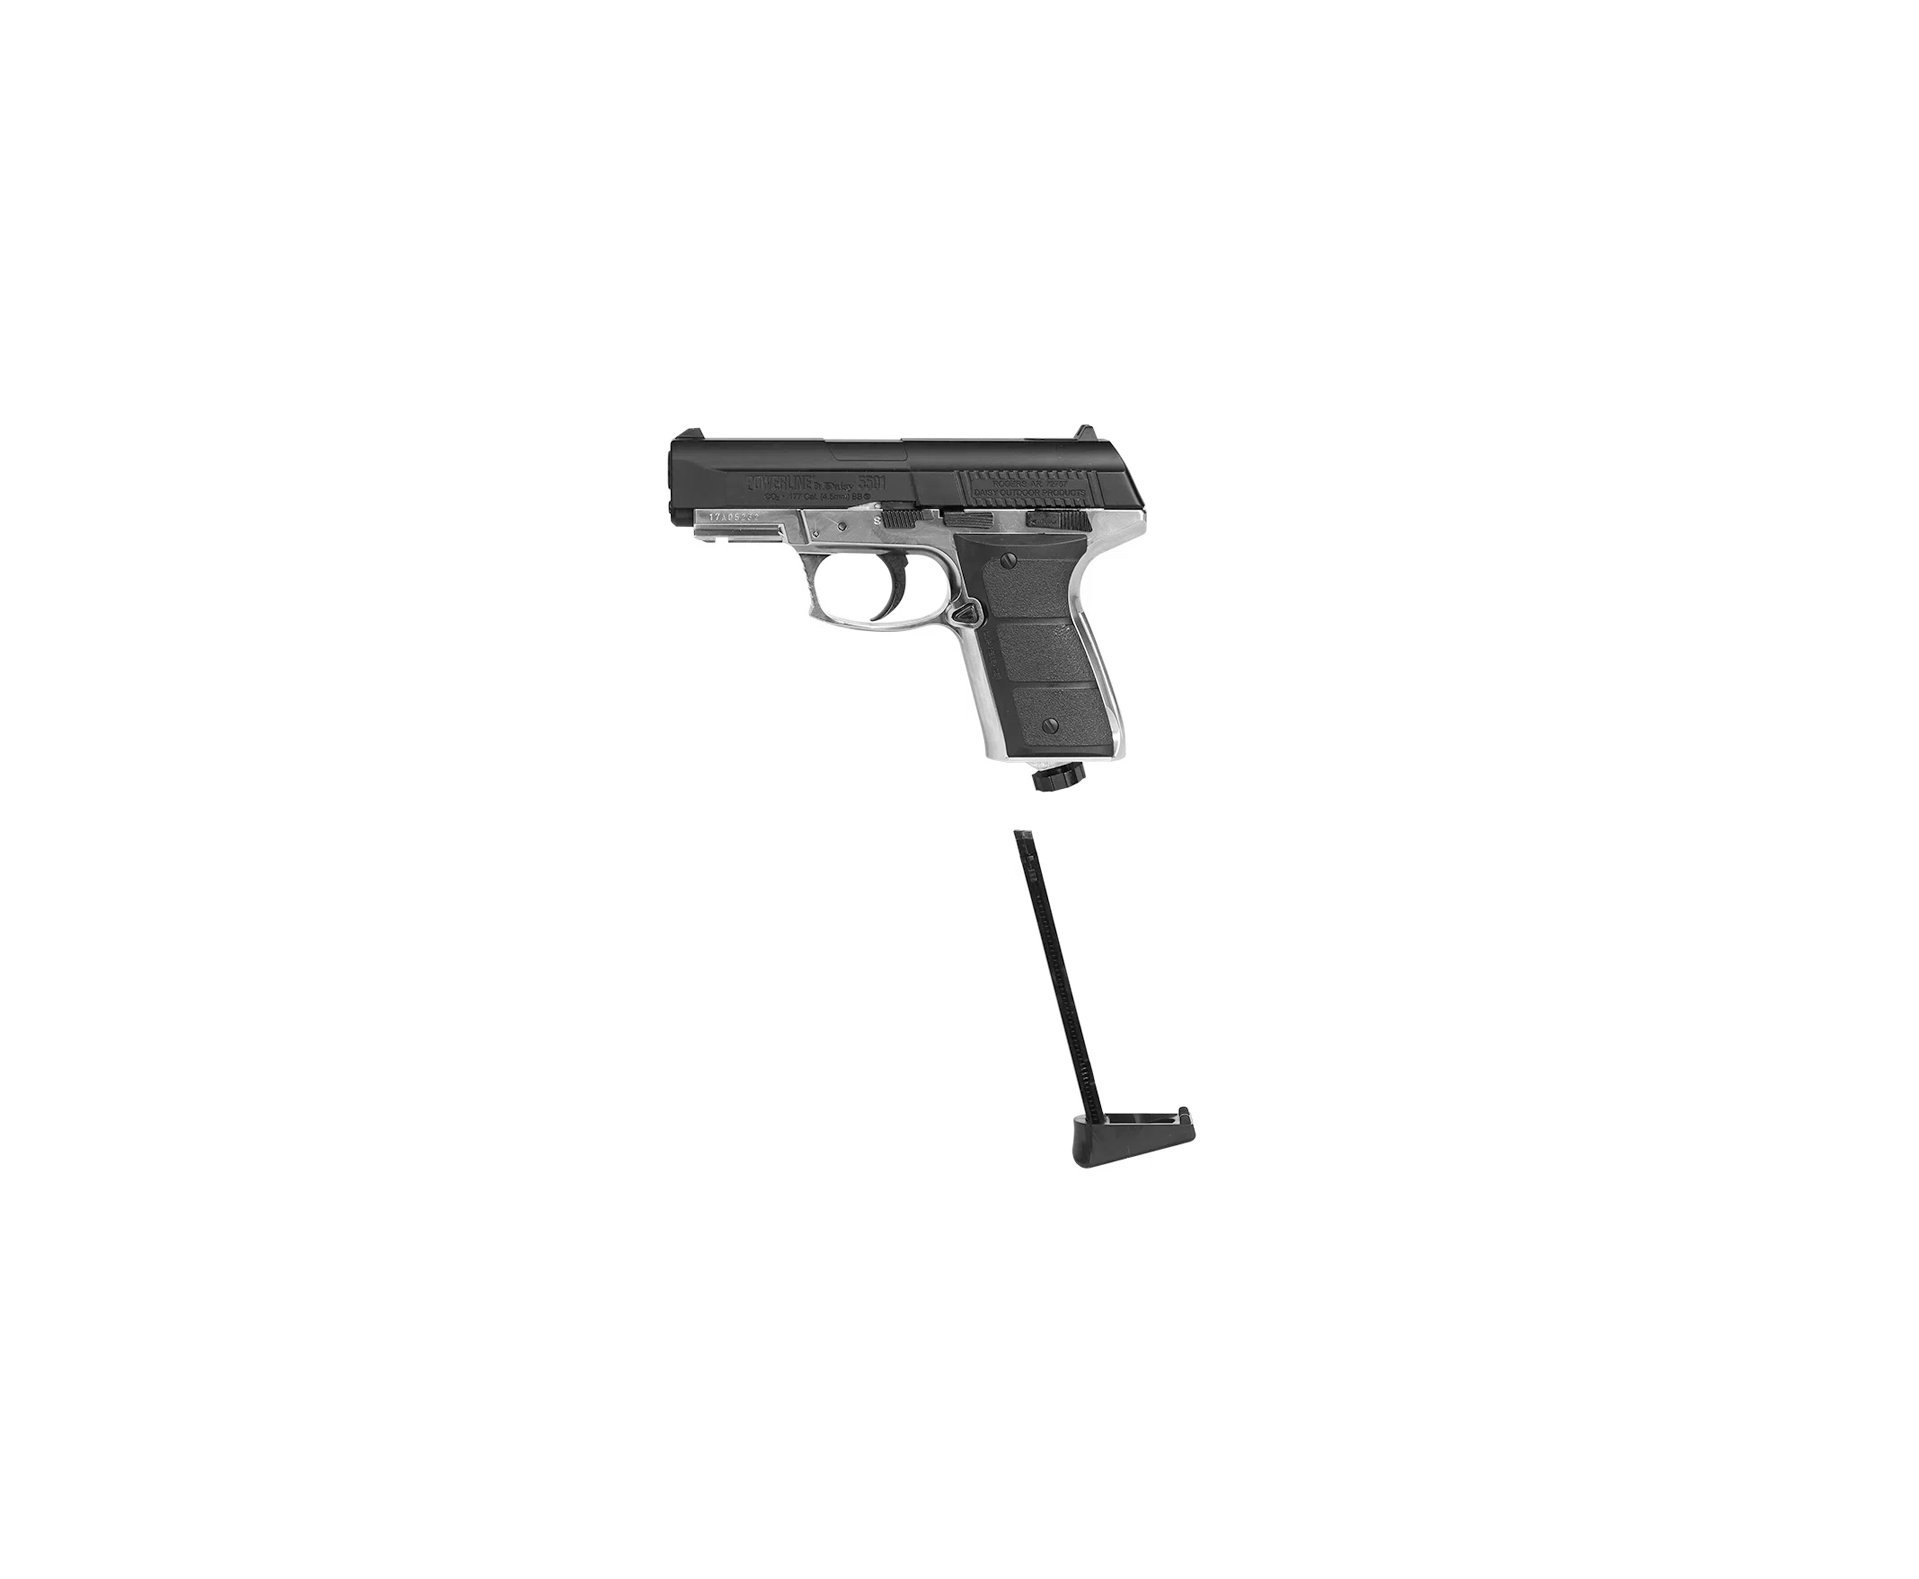 Pistola De Pressão Co2 Full Metal Daisy 5501 Powerline Com Blowback 4.5mm 15 Tiros